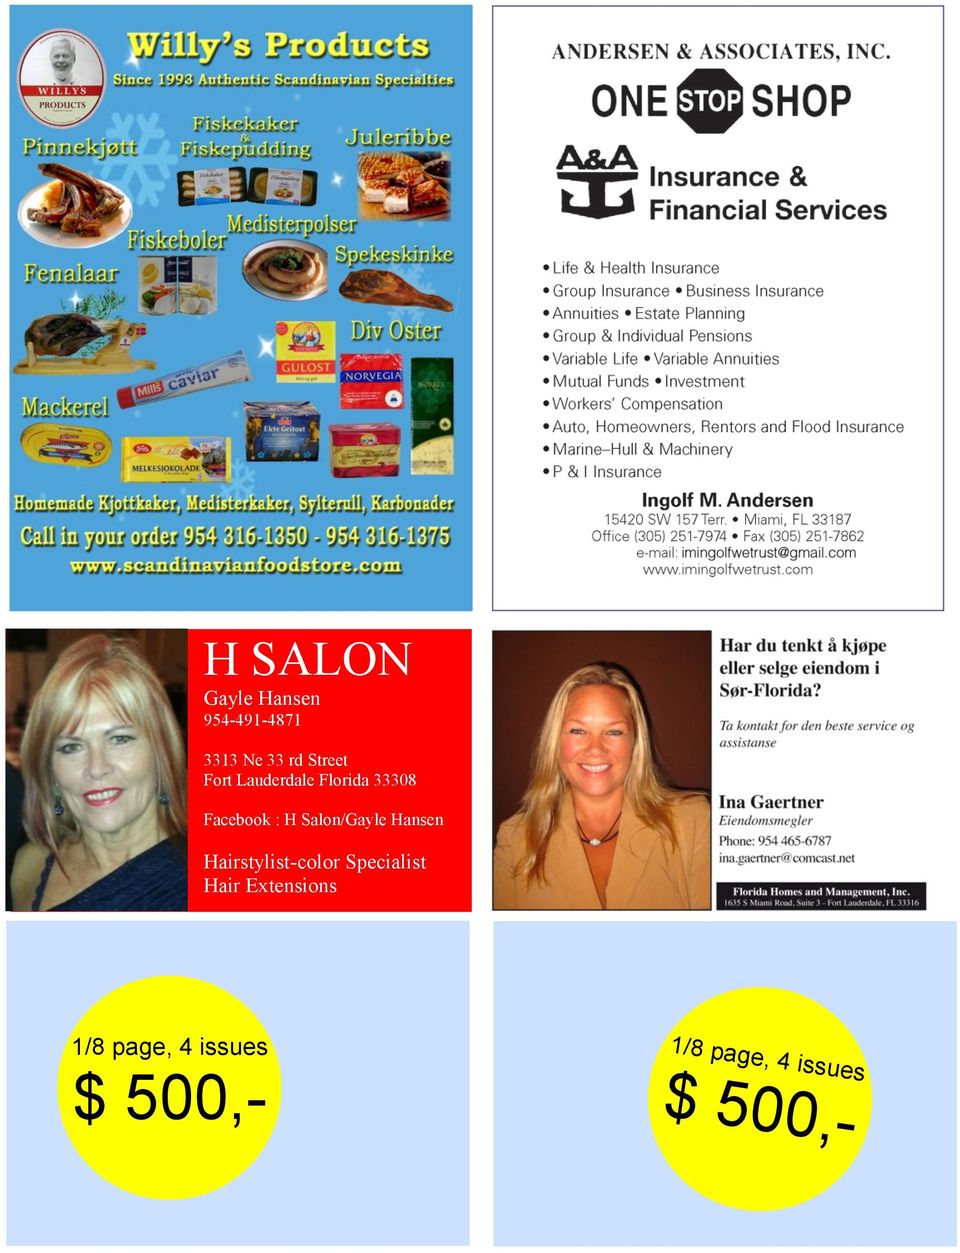 Salon/Gayle Hansen Hairstylist-color Specialist Hair